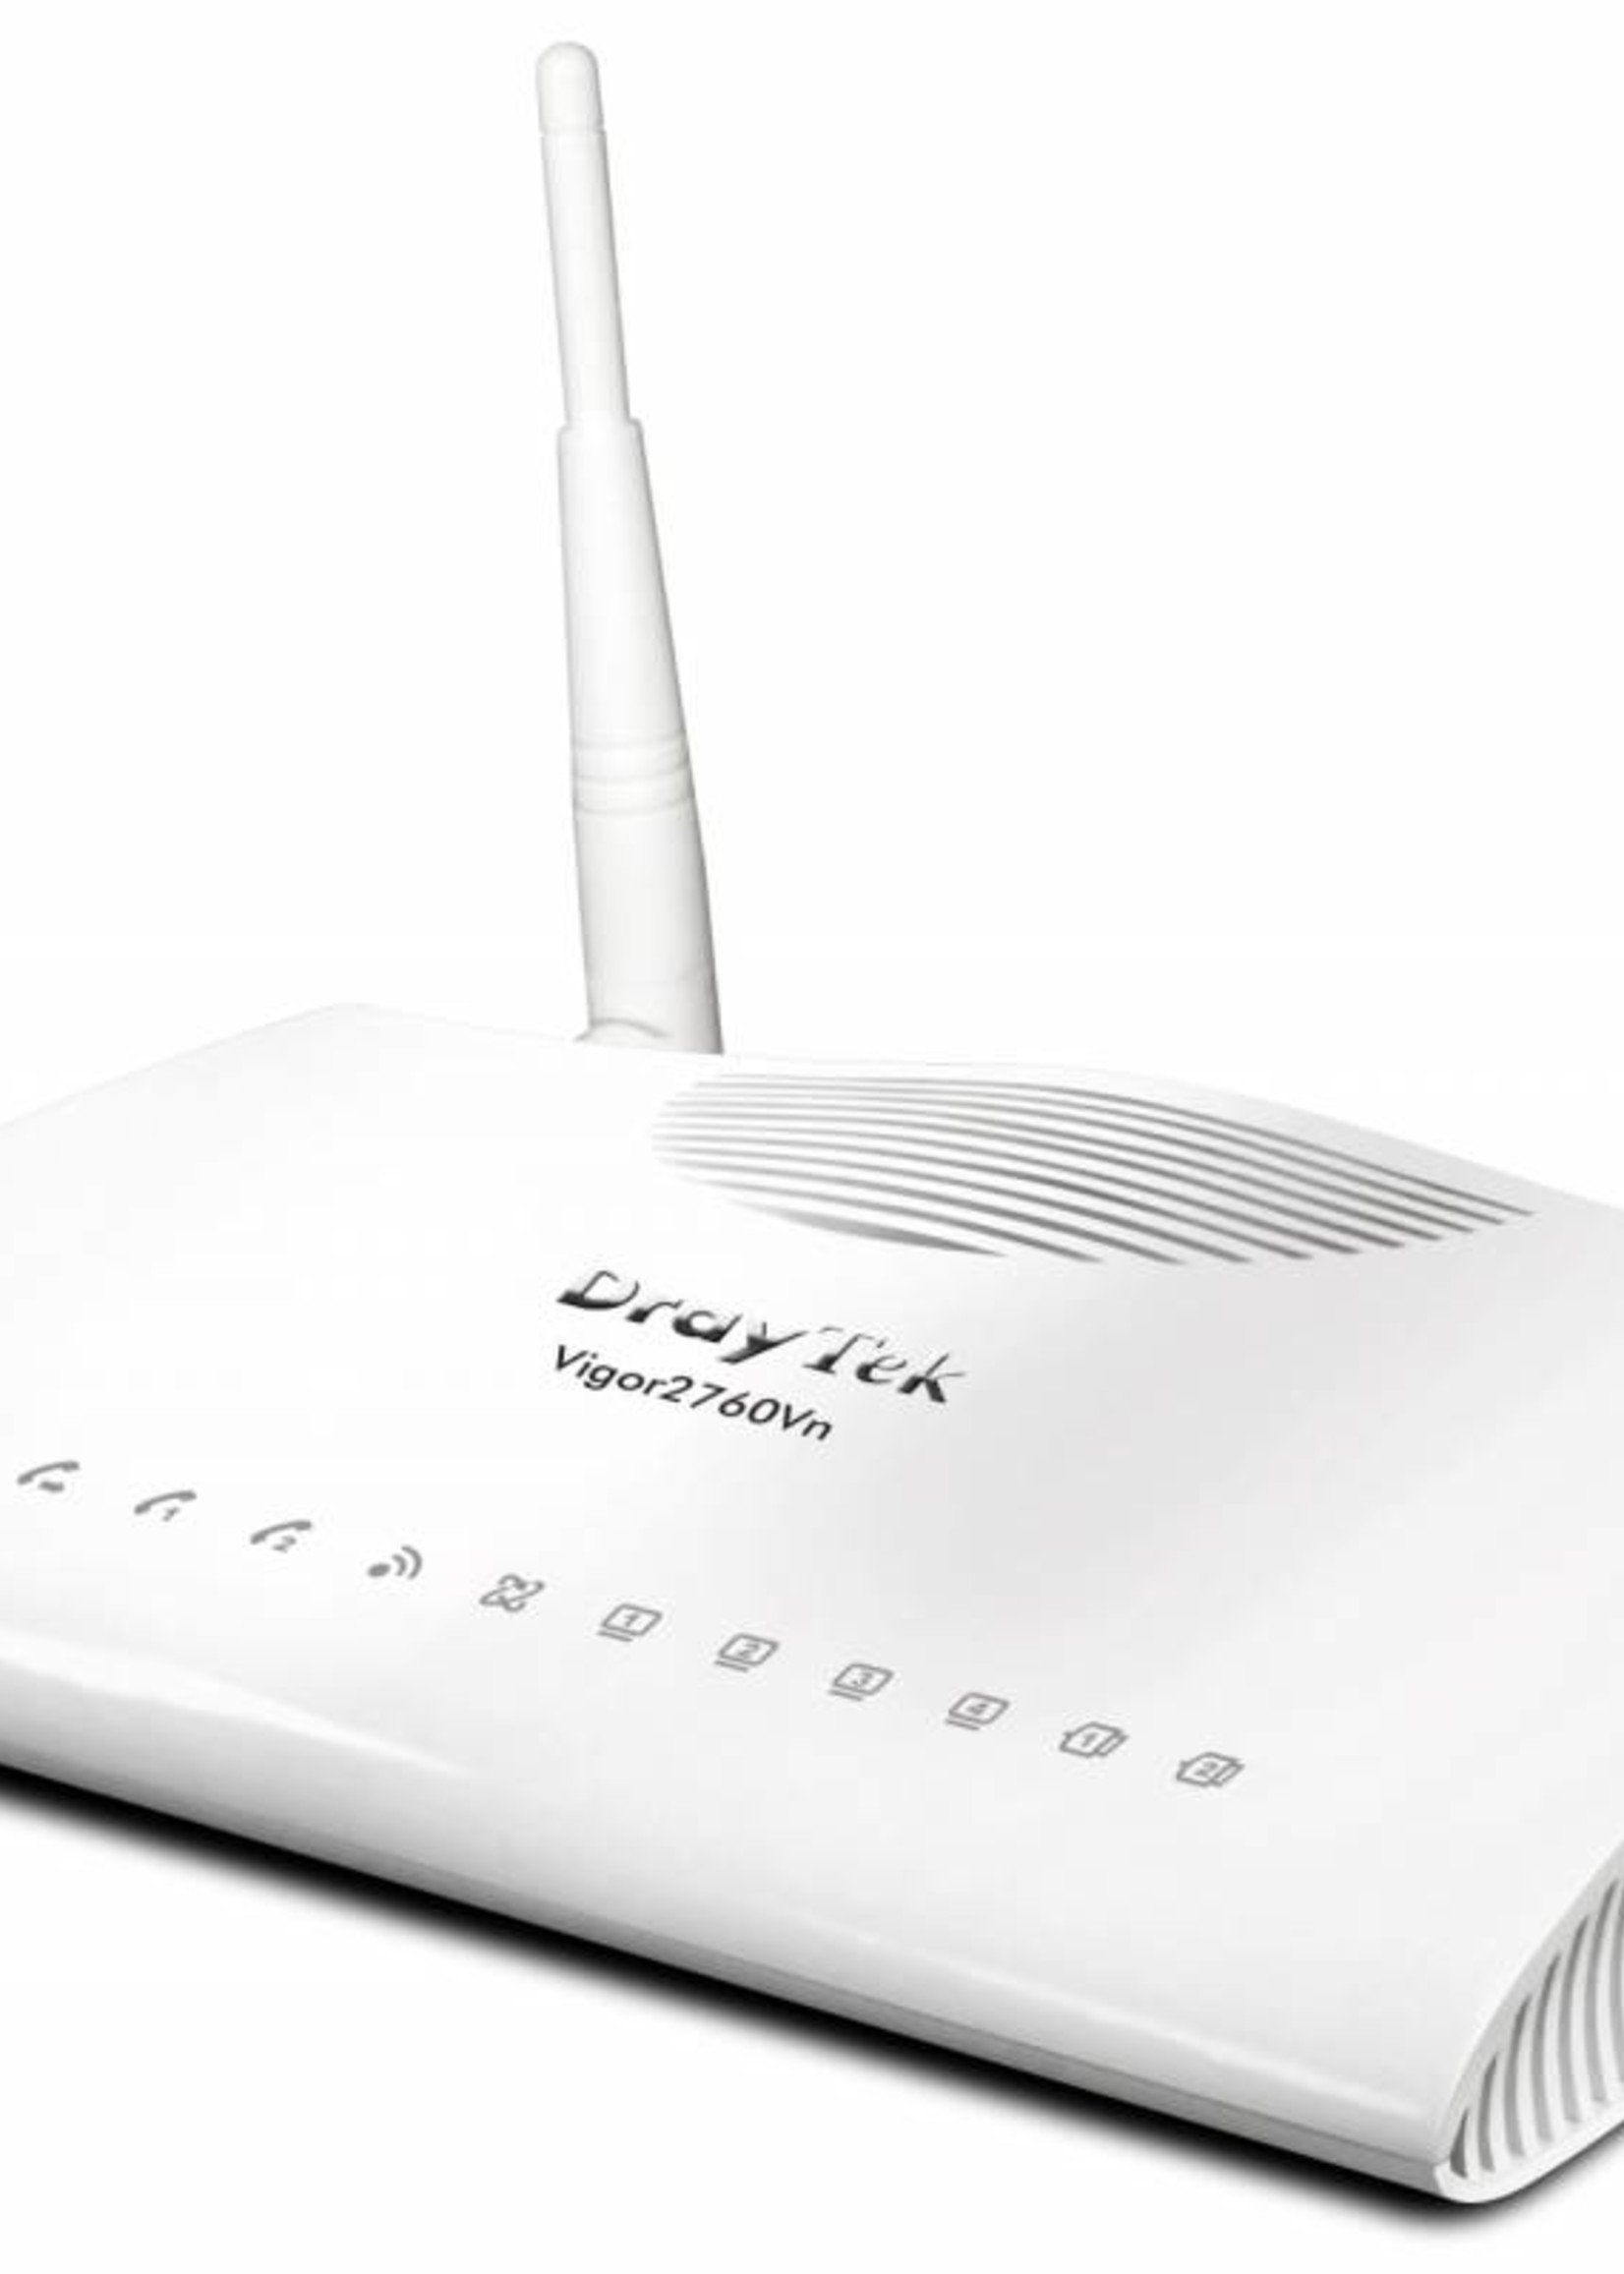 DrayTek Vigor 2760n VDSL2 - ADSL2/2+ modem/router Annex A